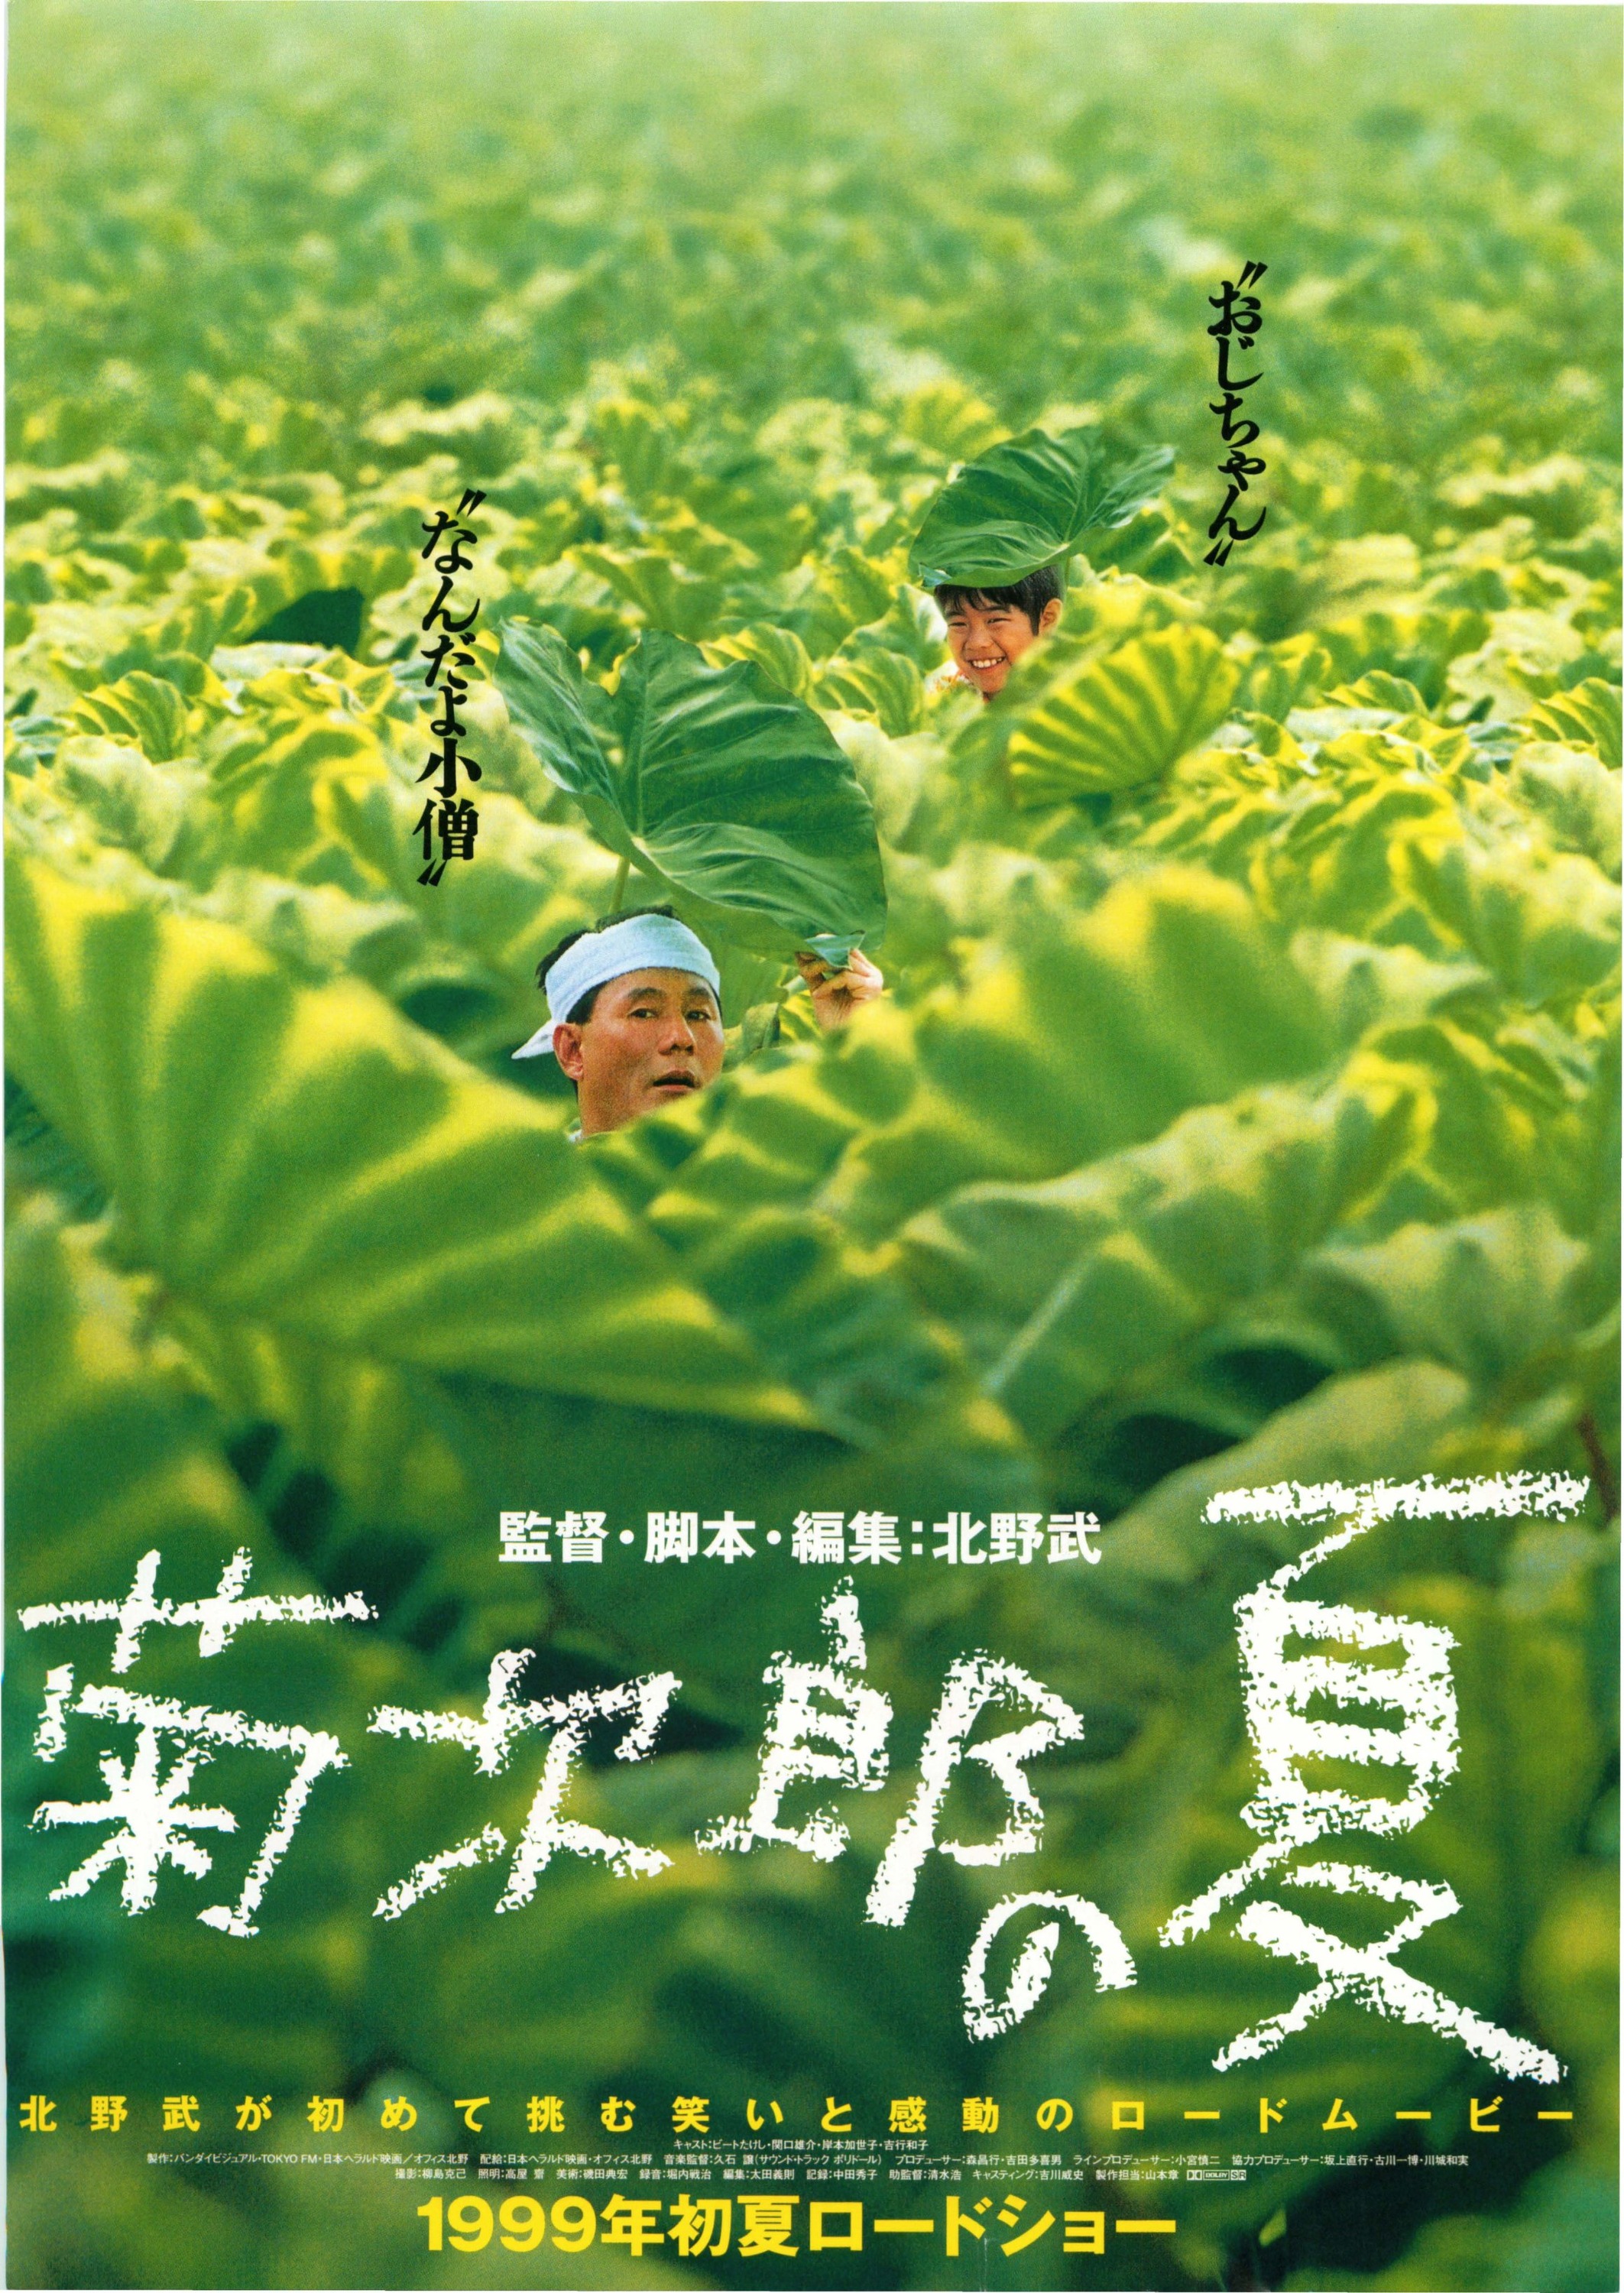 Mega Sized Movie Poster Image for Kikujirô no natsu (#1 of 2)